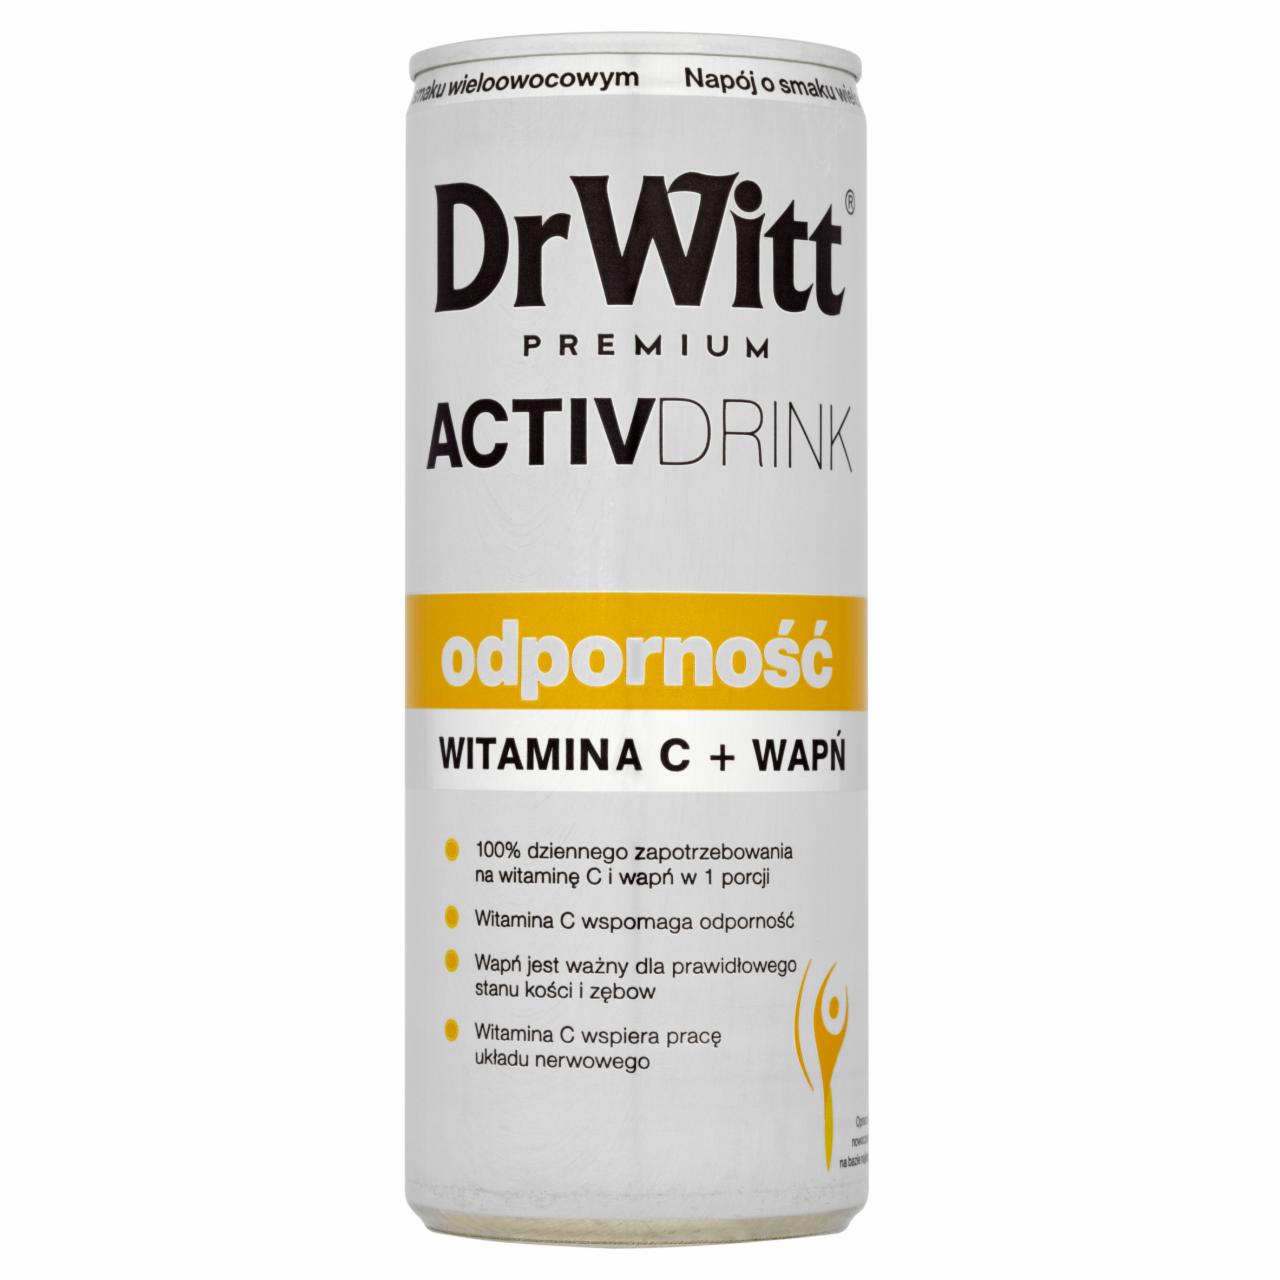 Zdjęcia - Dr Witt Premium Activdrink Odporność Napój o smaku wieloowocowym 250 ml